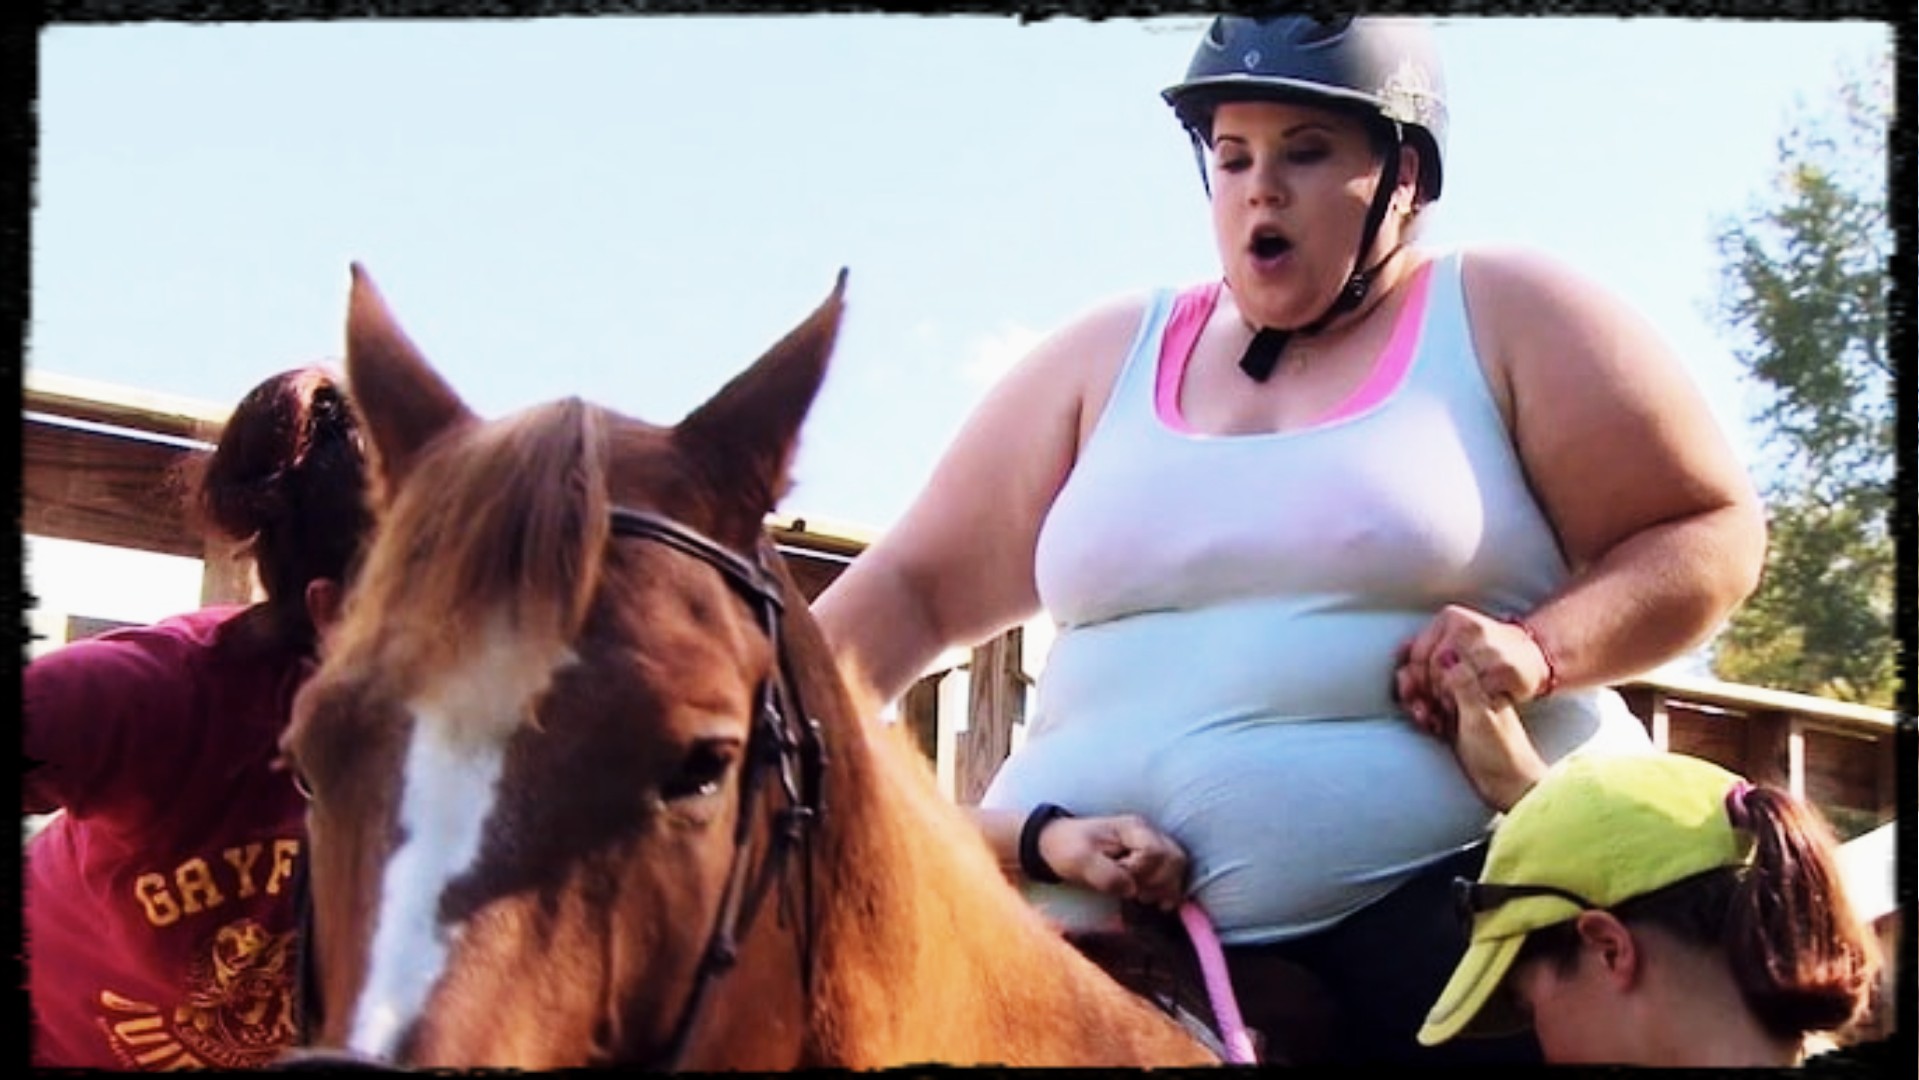 Fat females ride cock